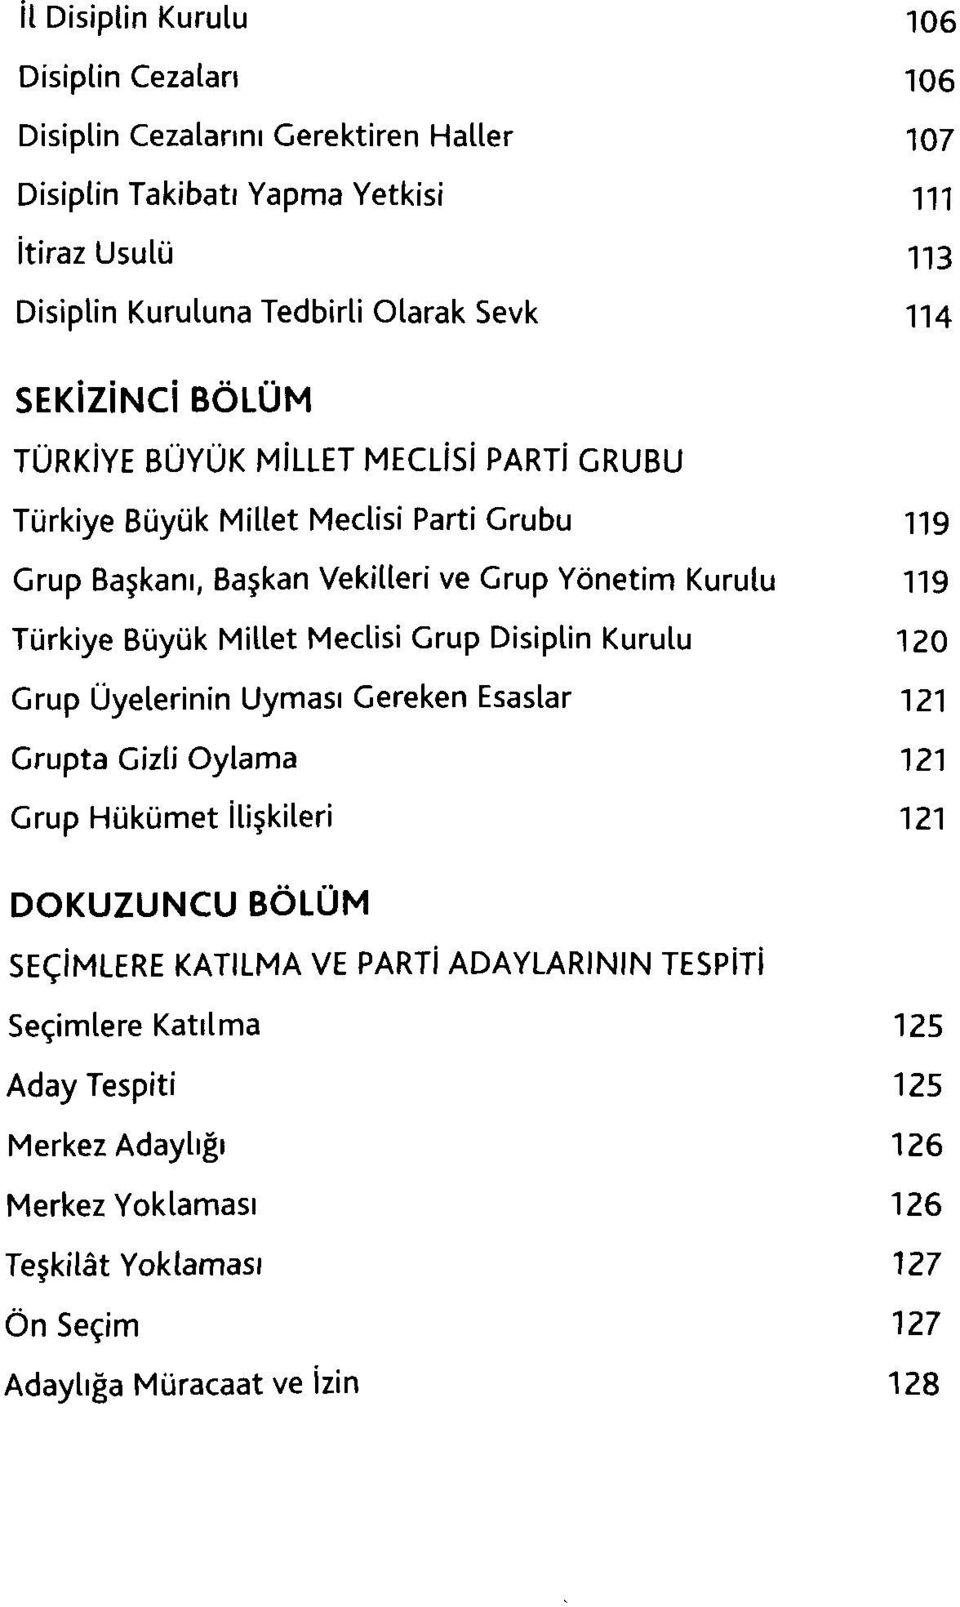 Türkiye Büyük Millet Meclisi Grup Disiplin Kurulu 120 Grup Üyelerinin Uyması Gereken Esaslar 121 Grupta Gizli Oylama 121 Grup Hükümet İlişkileri 121 DOKUZUNCU BÖLÜM SEÇİMLERE